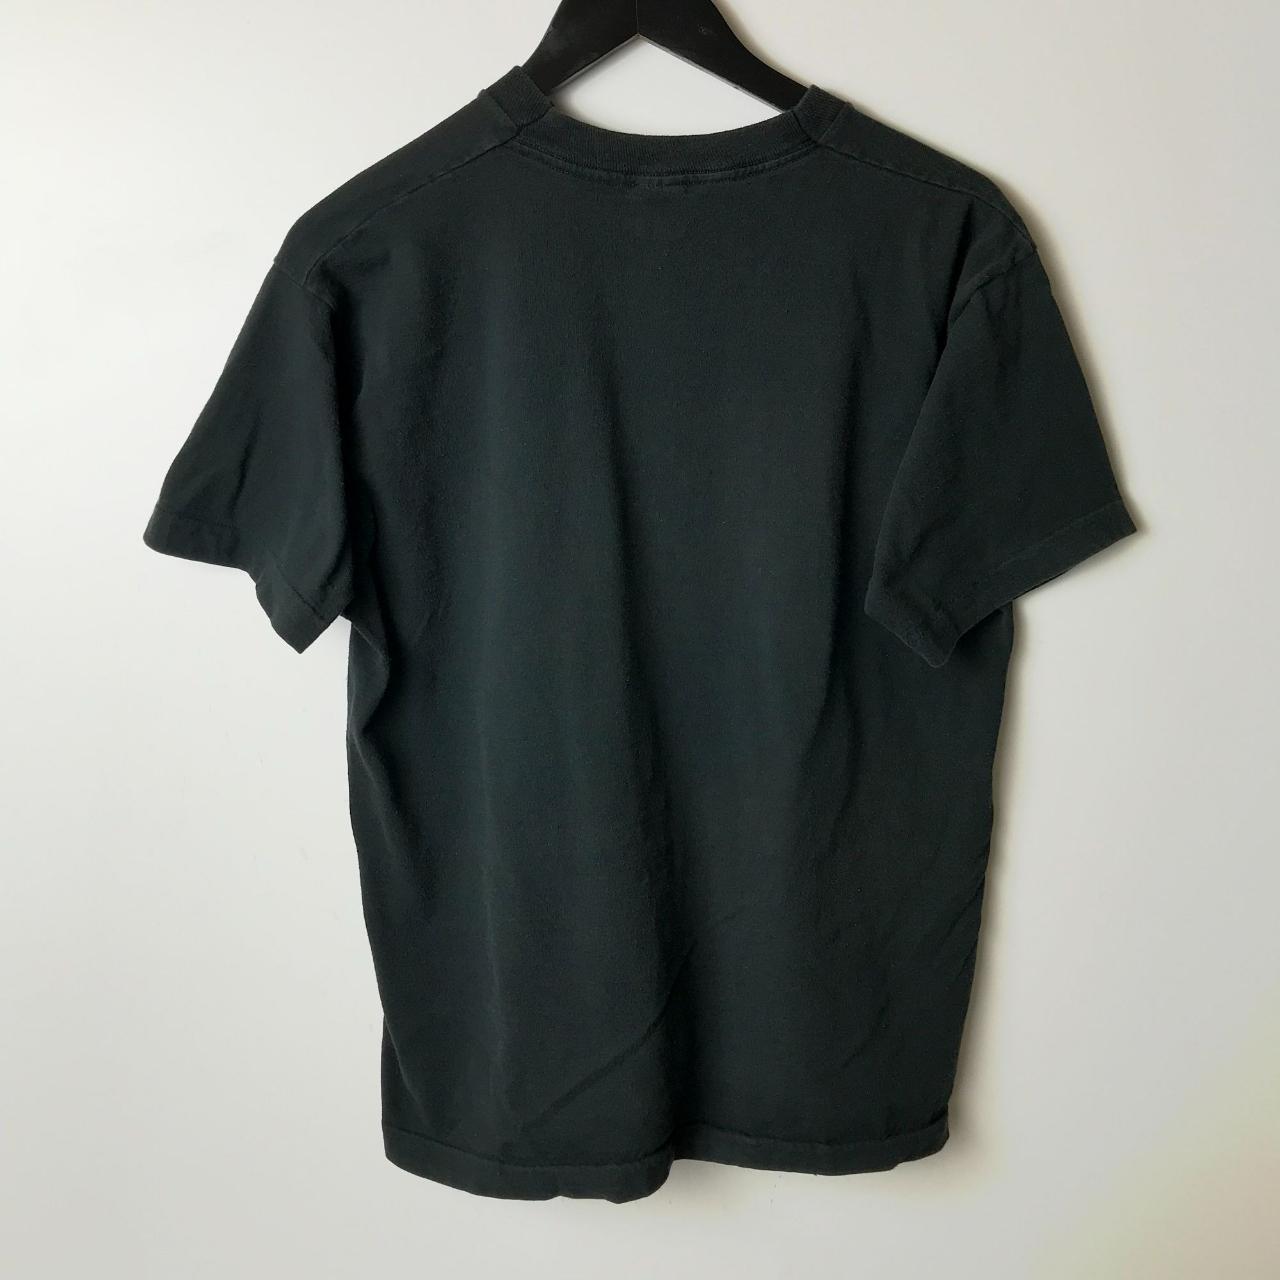 90s Vintage Purdue University T Shirt Single Stitch... - Depop